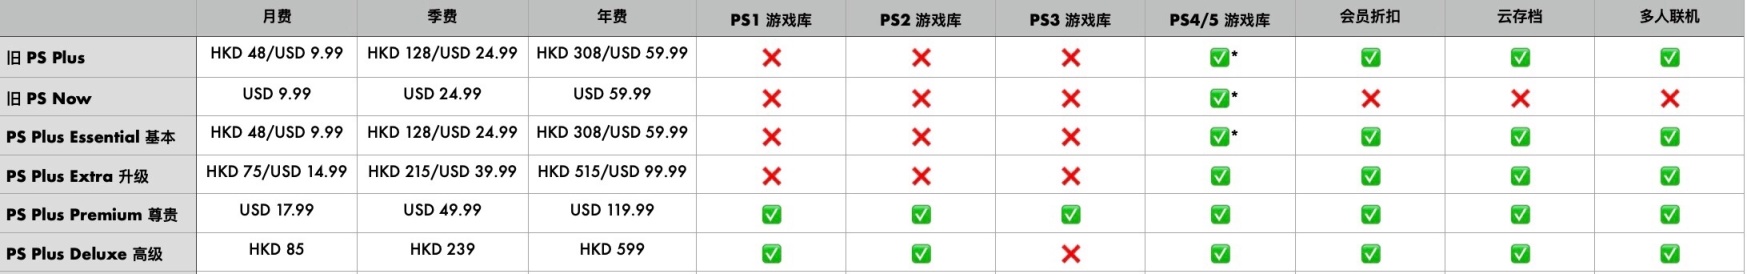 【主机游戏】Ps Plus 新订阅制服务上线时间公布-第1张